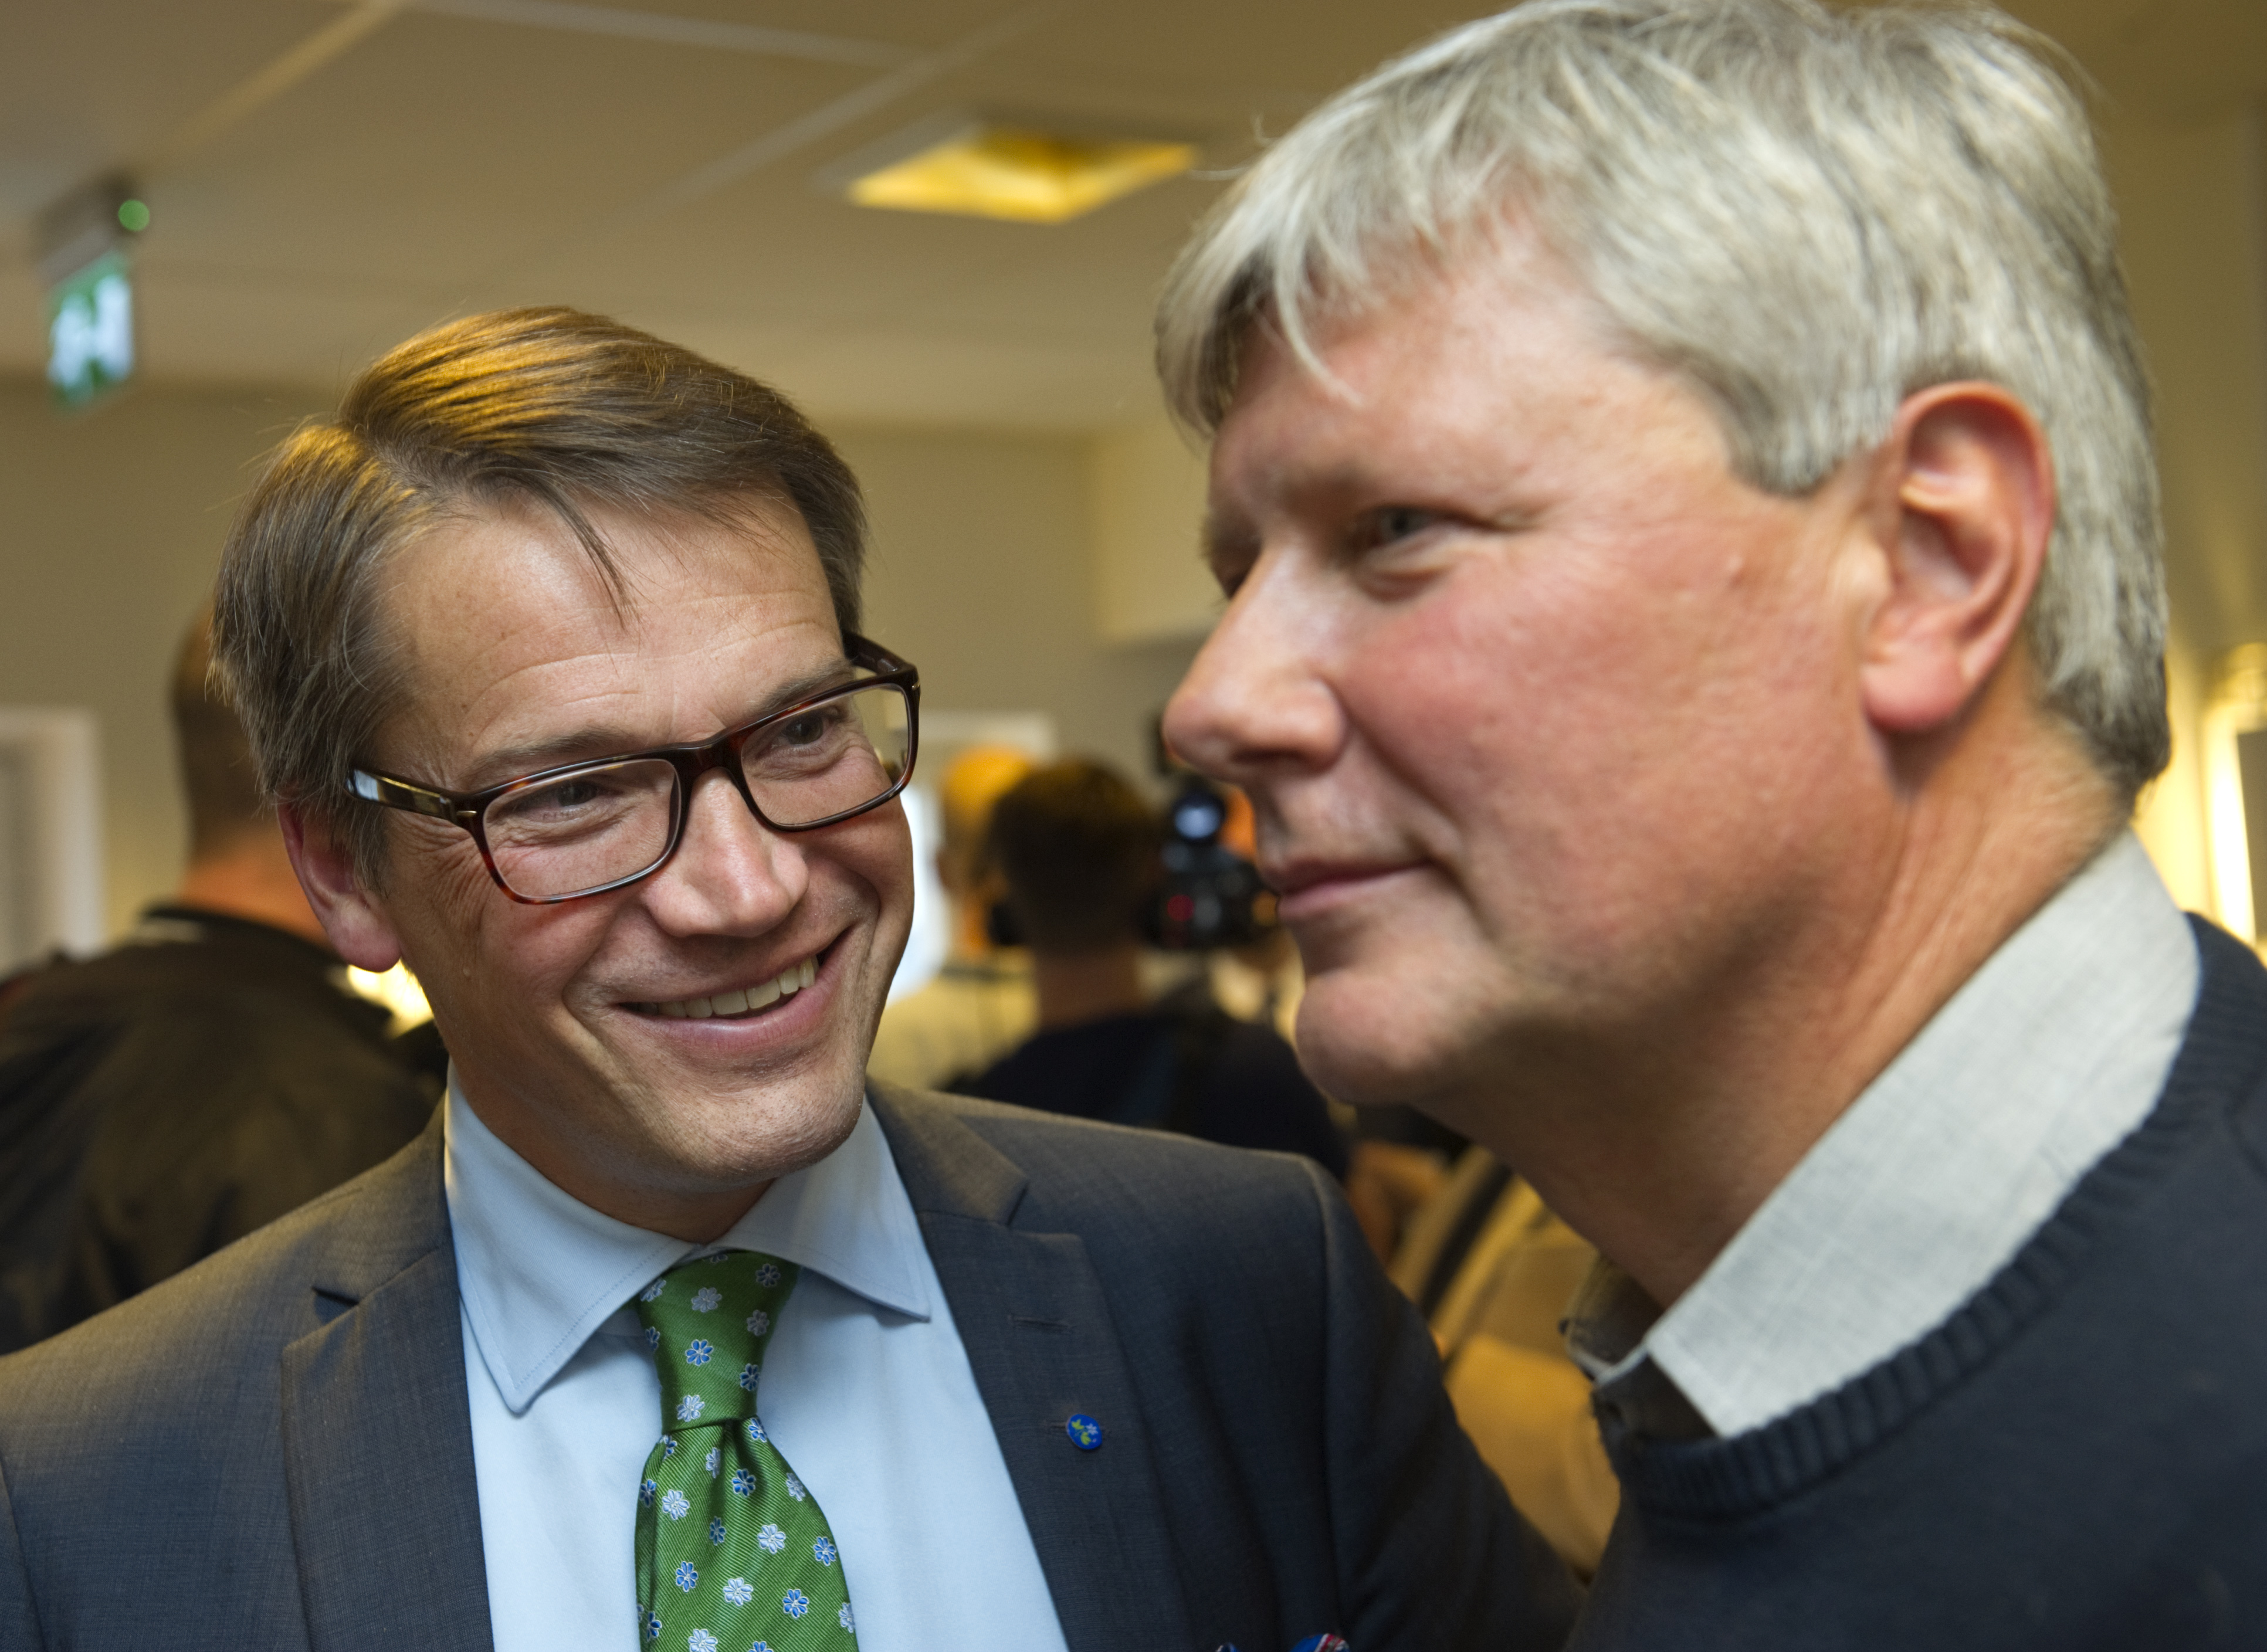 Kd-ledaren Göran Hägglund och v-ledaren Lars Ohly krigar om vad som sagts om Mellanöstern.